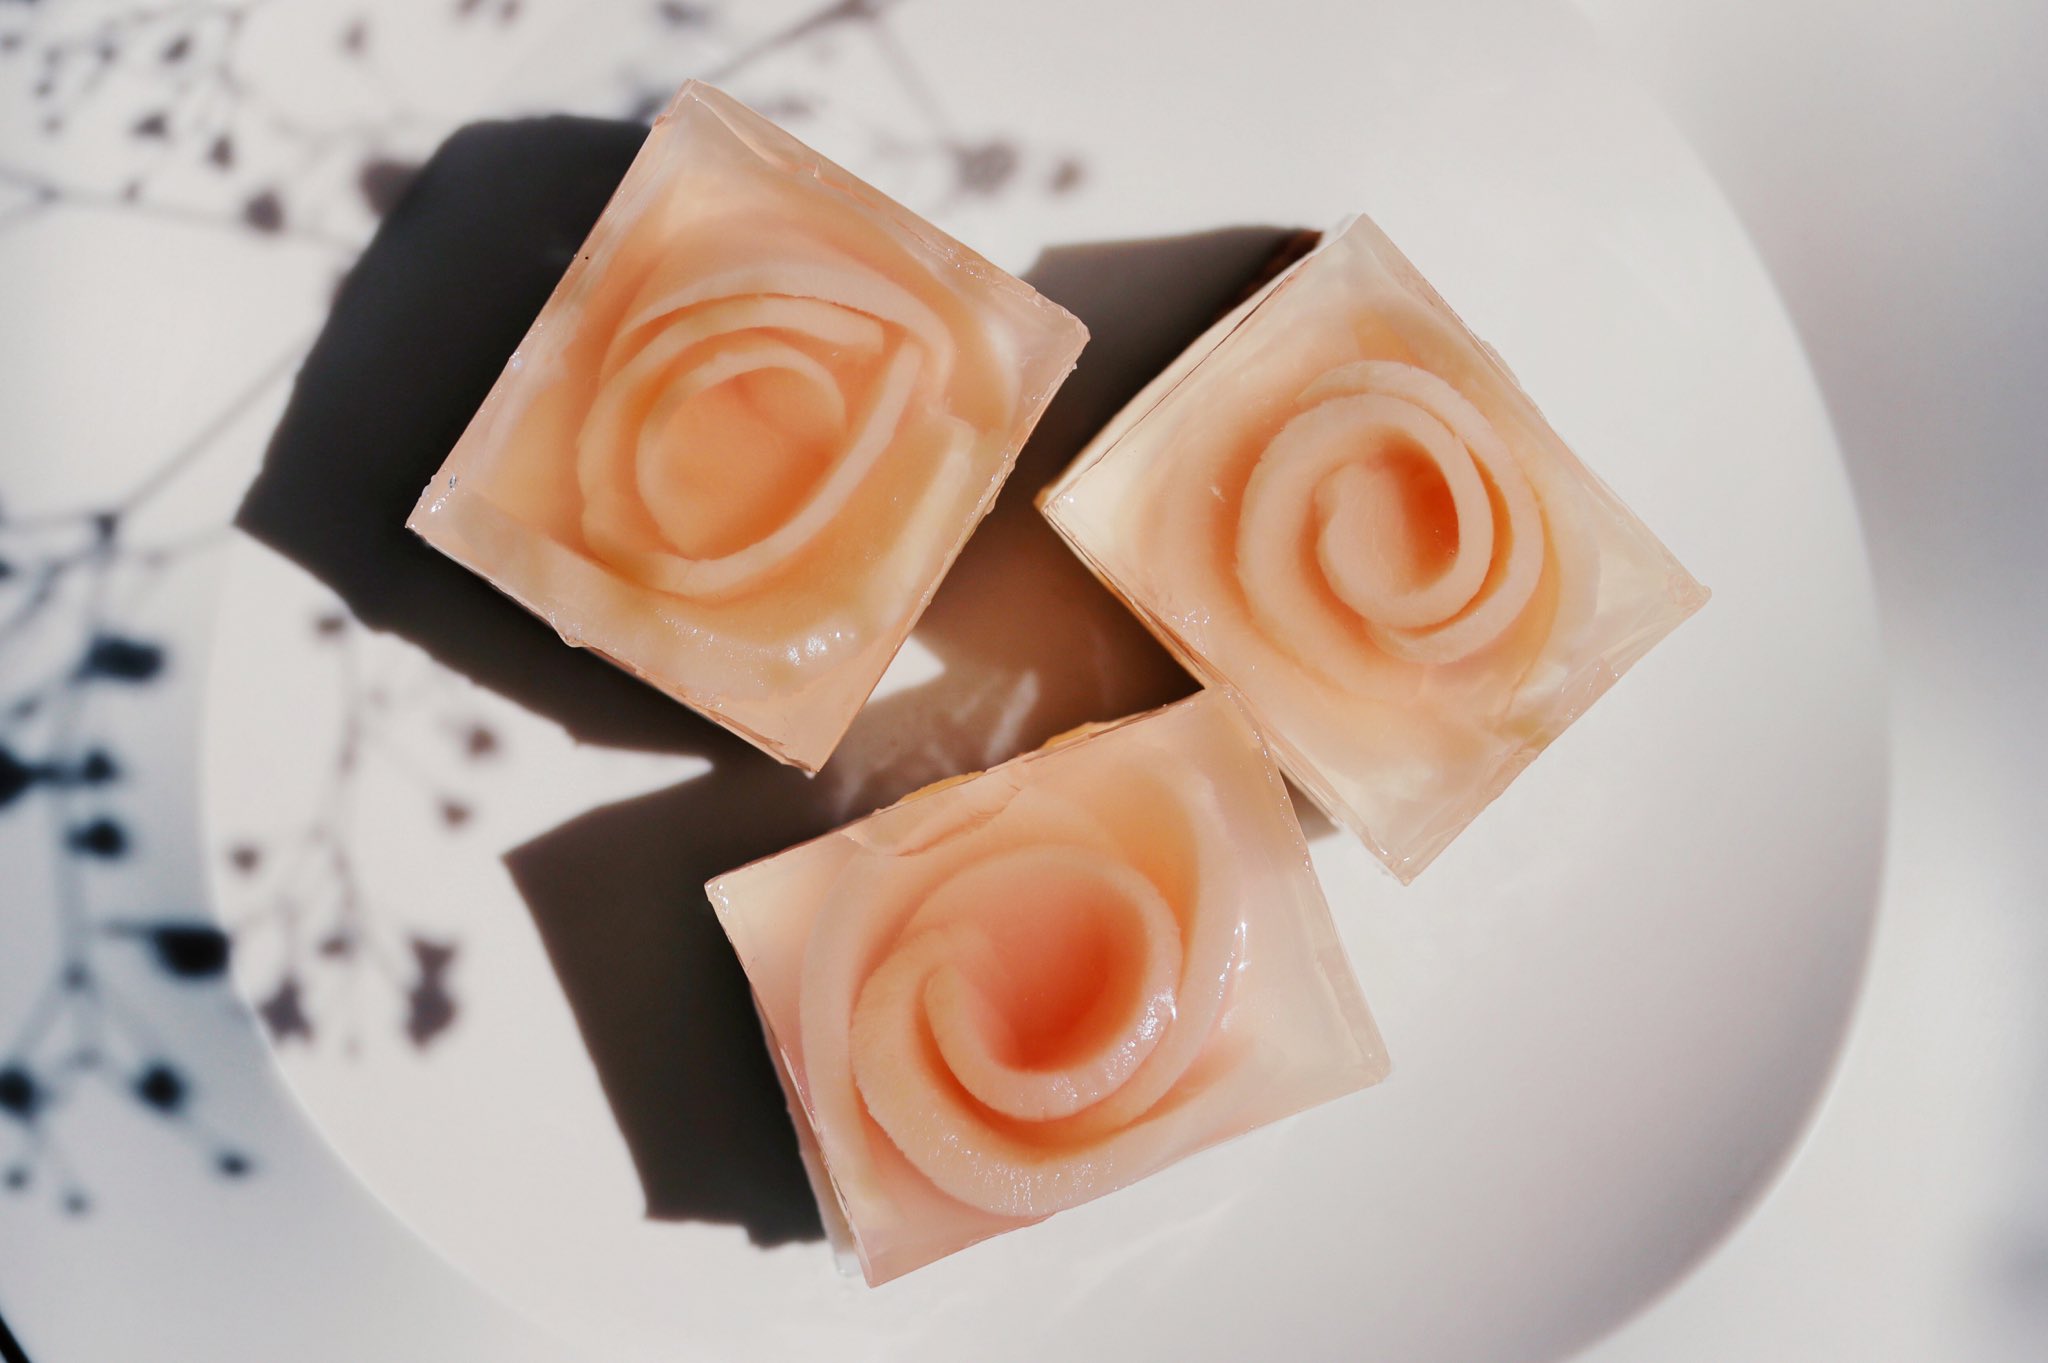 Tomei 透明愛好家 Sheageに掲載させていただきました 透明のスイーツレシピ本に載っている 四角い桃の薔薇 レアチーズケーキの作り方が載っています T Co 8qlq4p8ezp T Co Zulfnegx3m Twitter